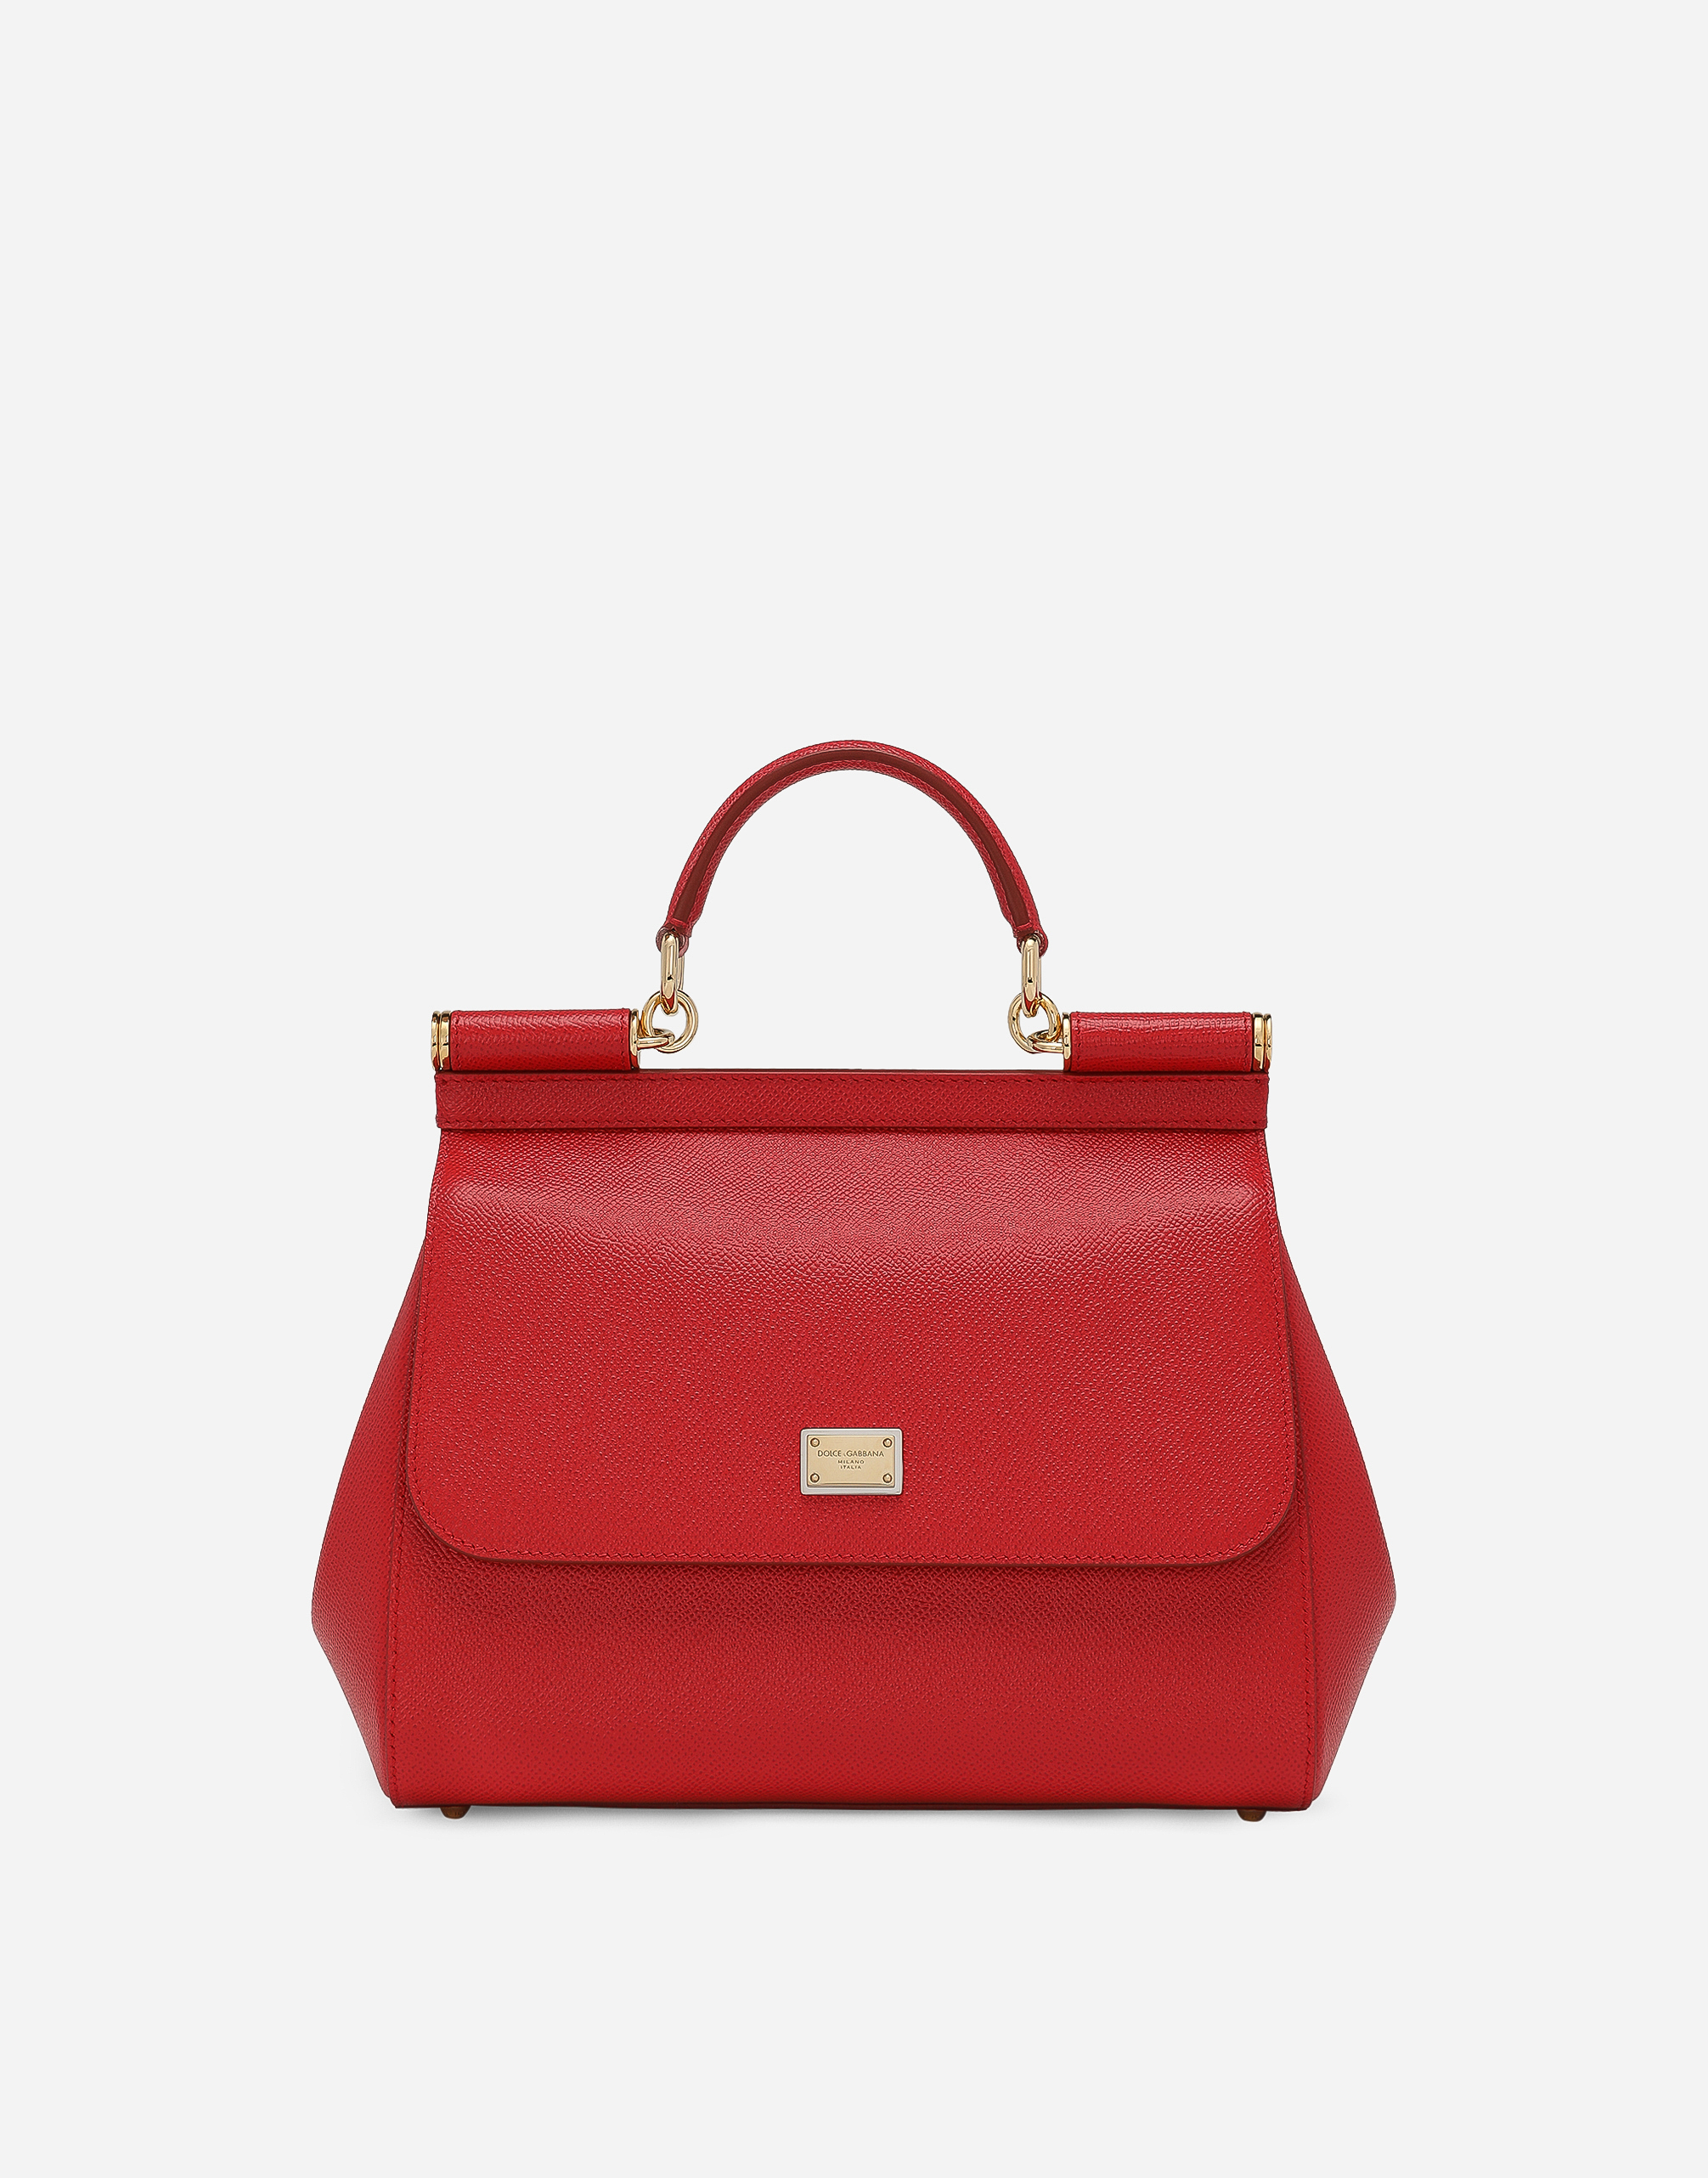 Medium Sicily handbag in dauphine leather in Red